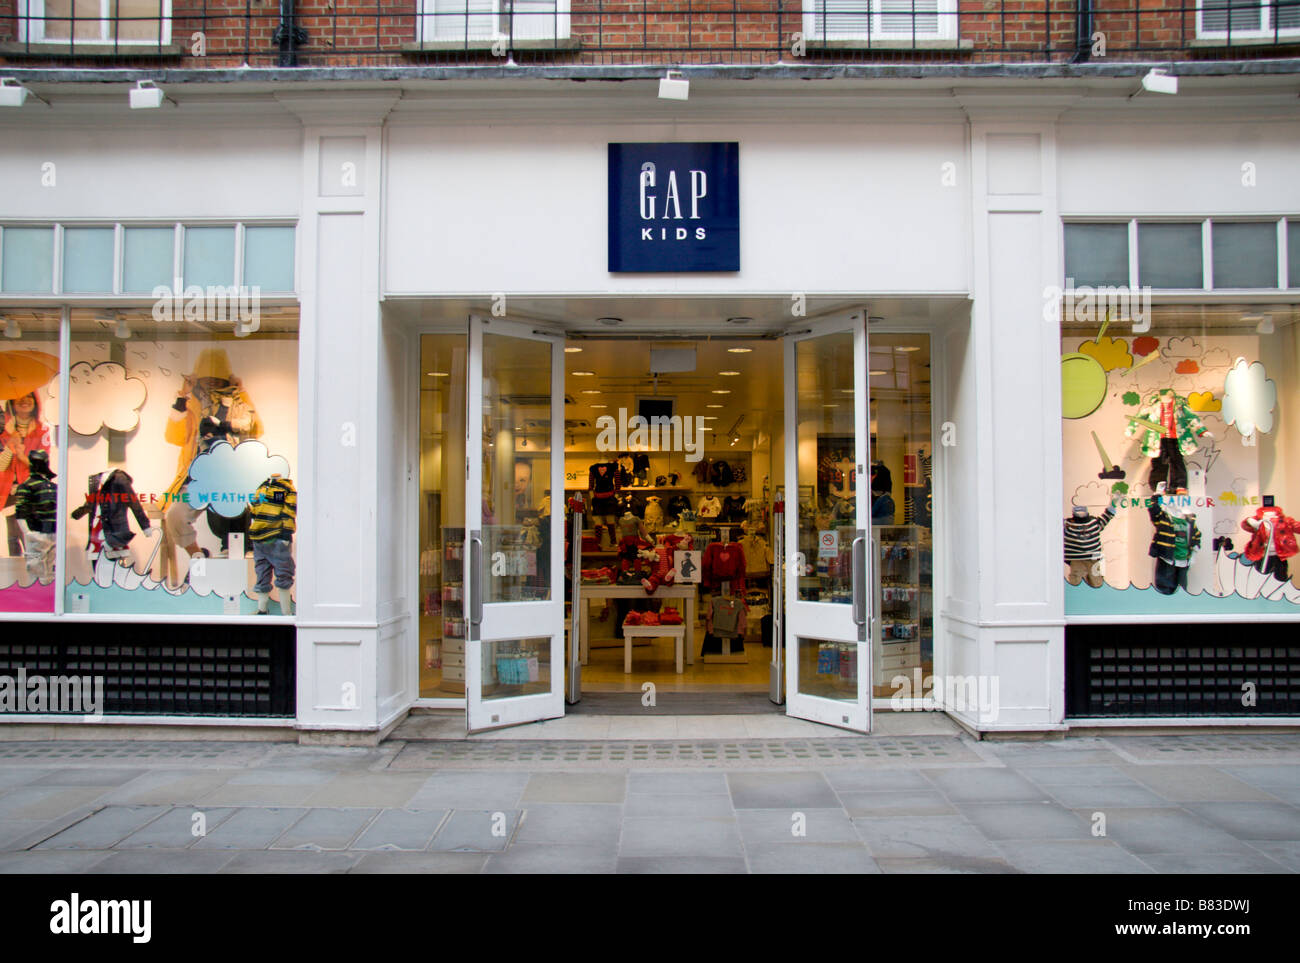 L'entrée de la boutique Bébé boutique de vêtements Gap à Covent Garden, Londres. Jan 2009 Banque D'Images